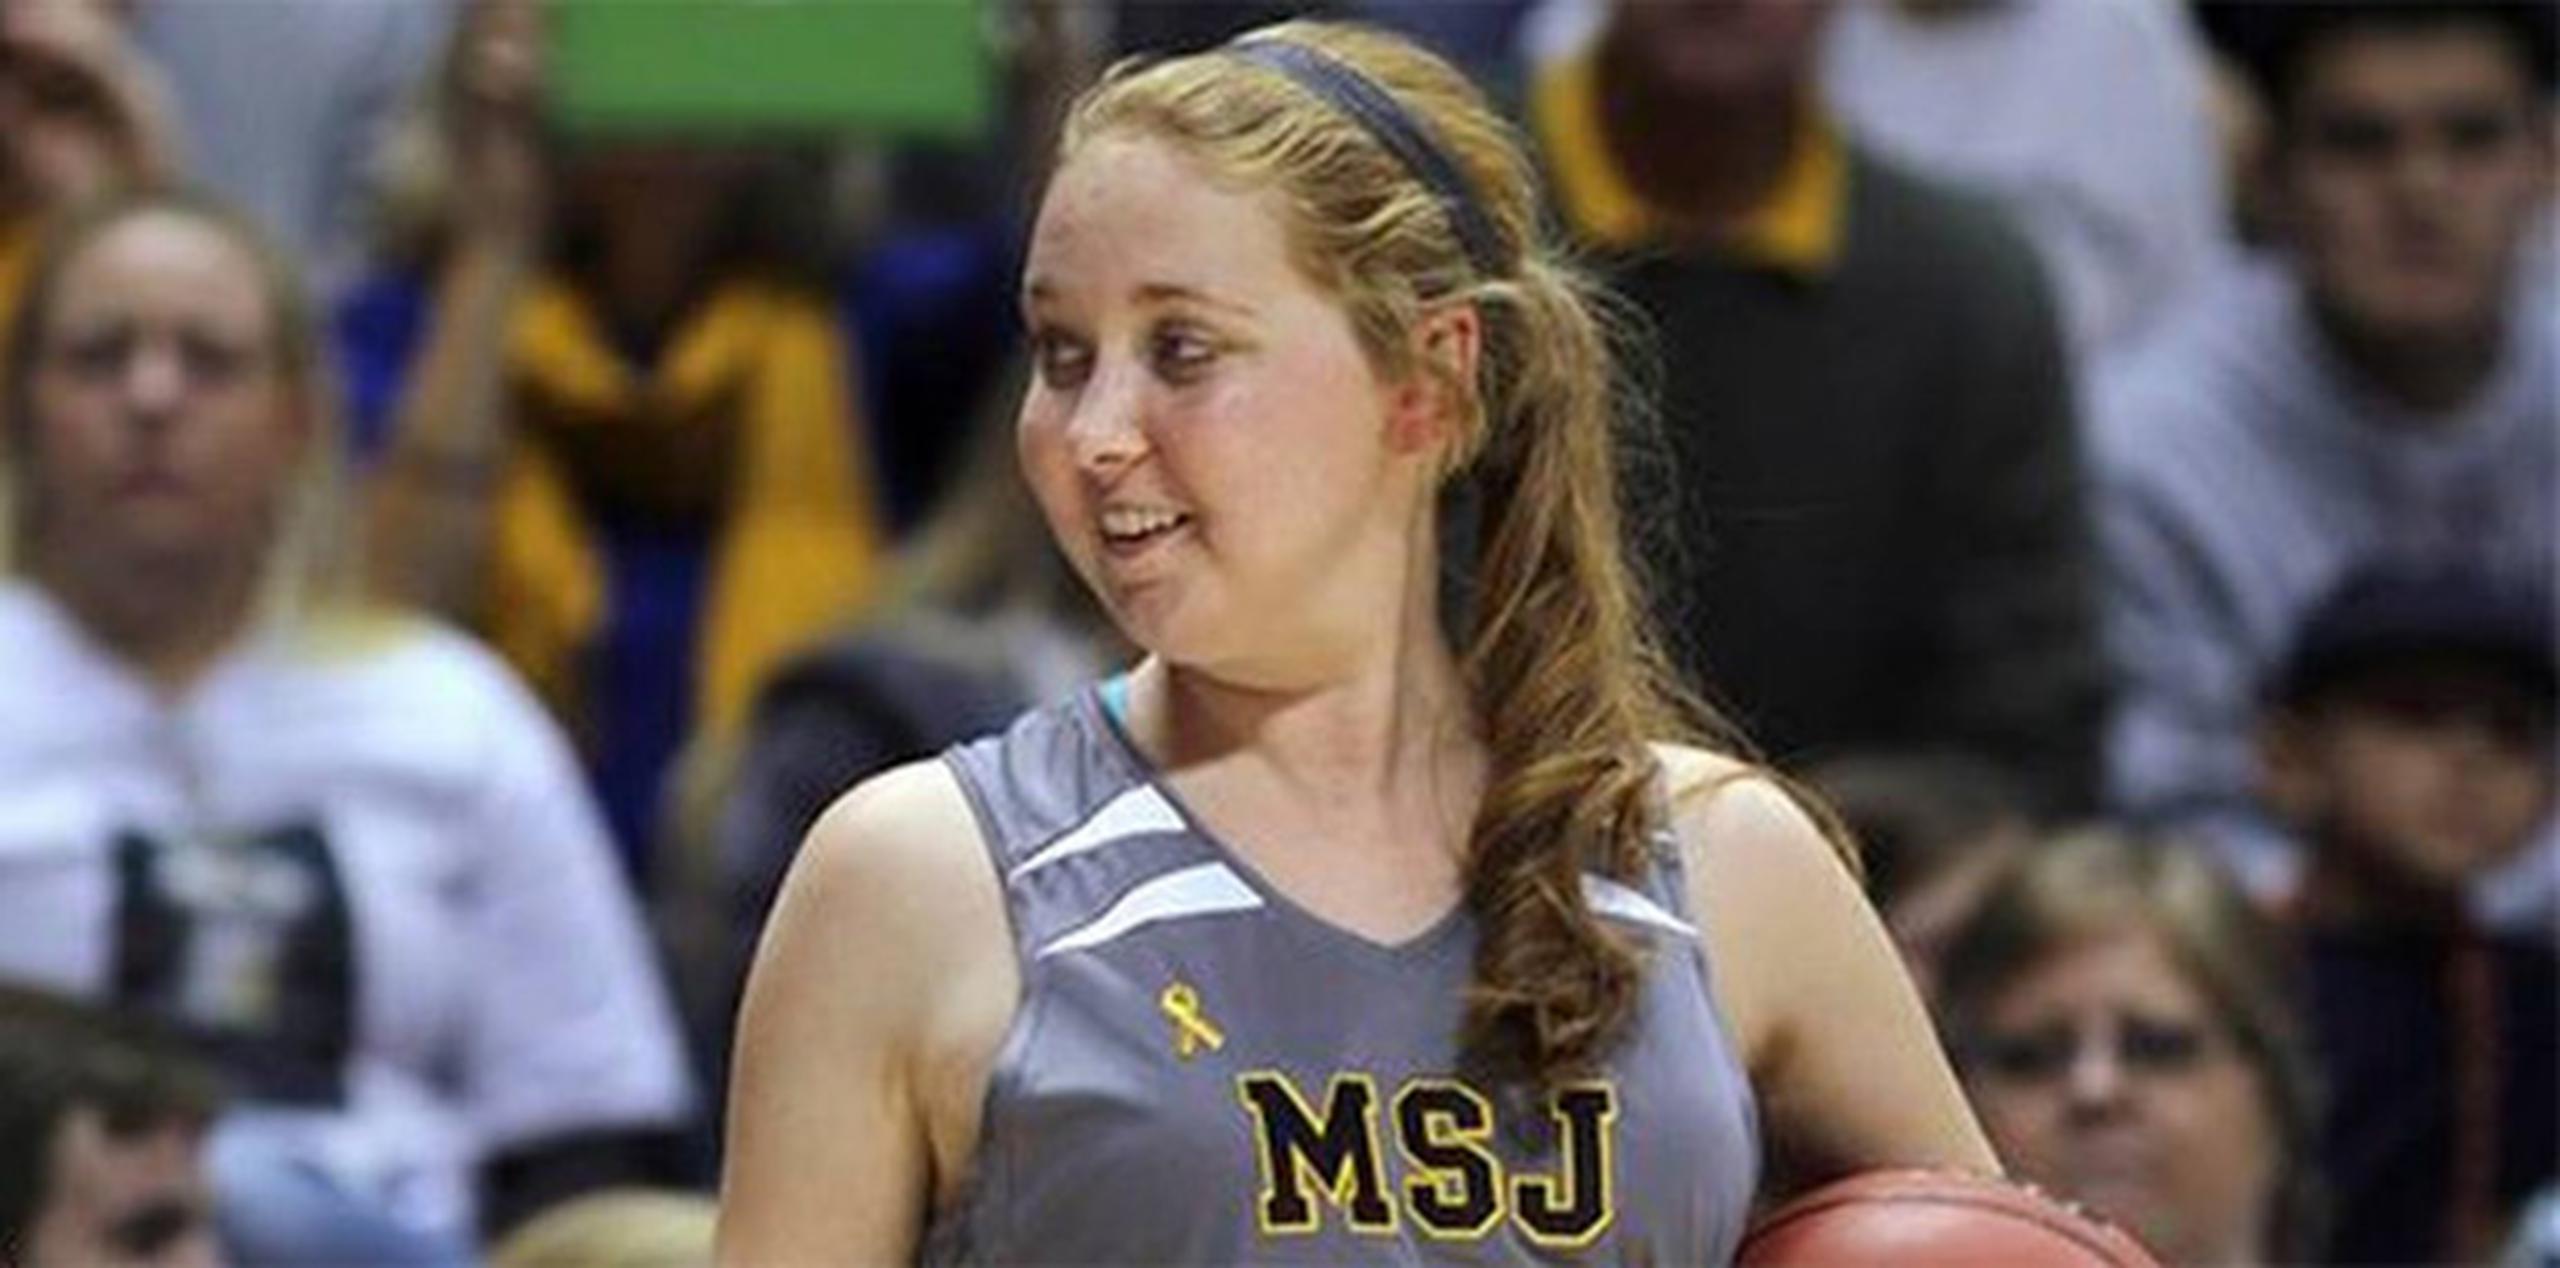 La jugadora de baloncesto de primer año de universidad murió esta mañana a los 19 años. (AP)